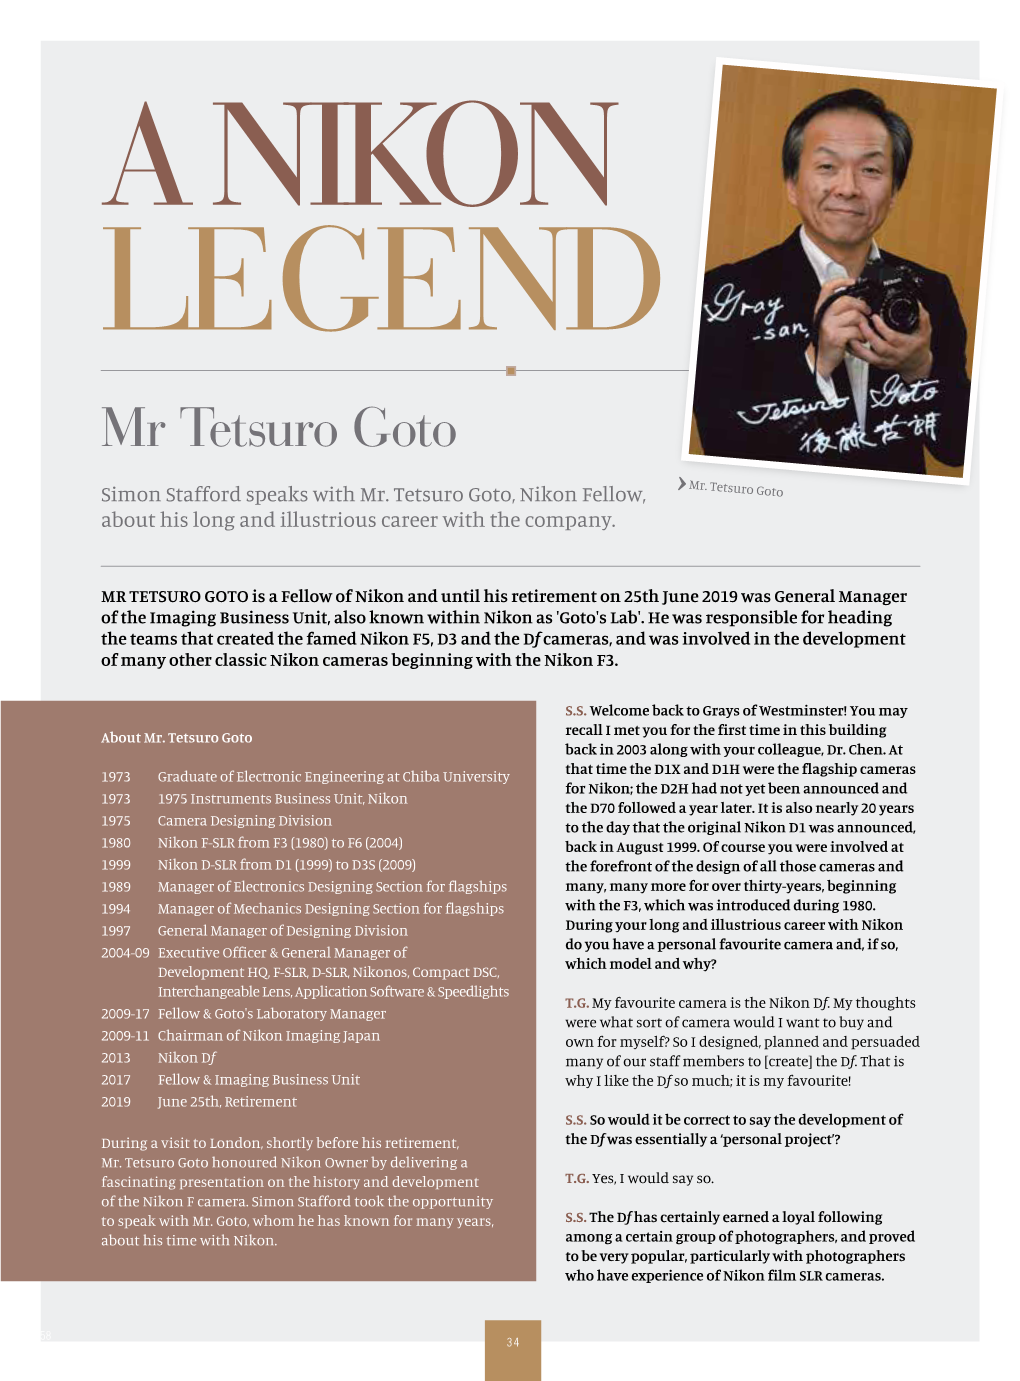 Mr Tetsuro Goto